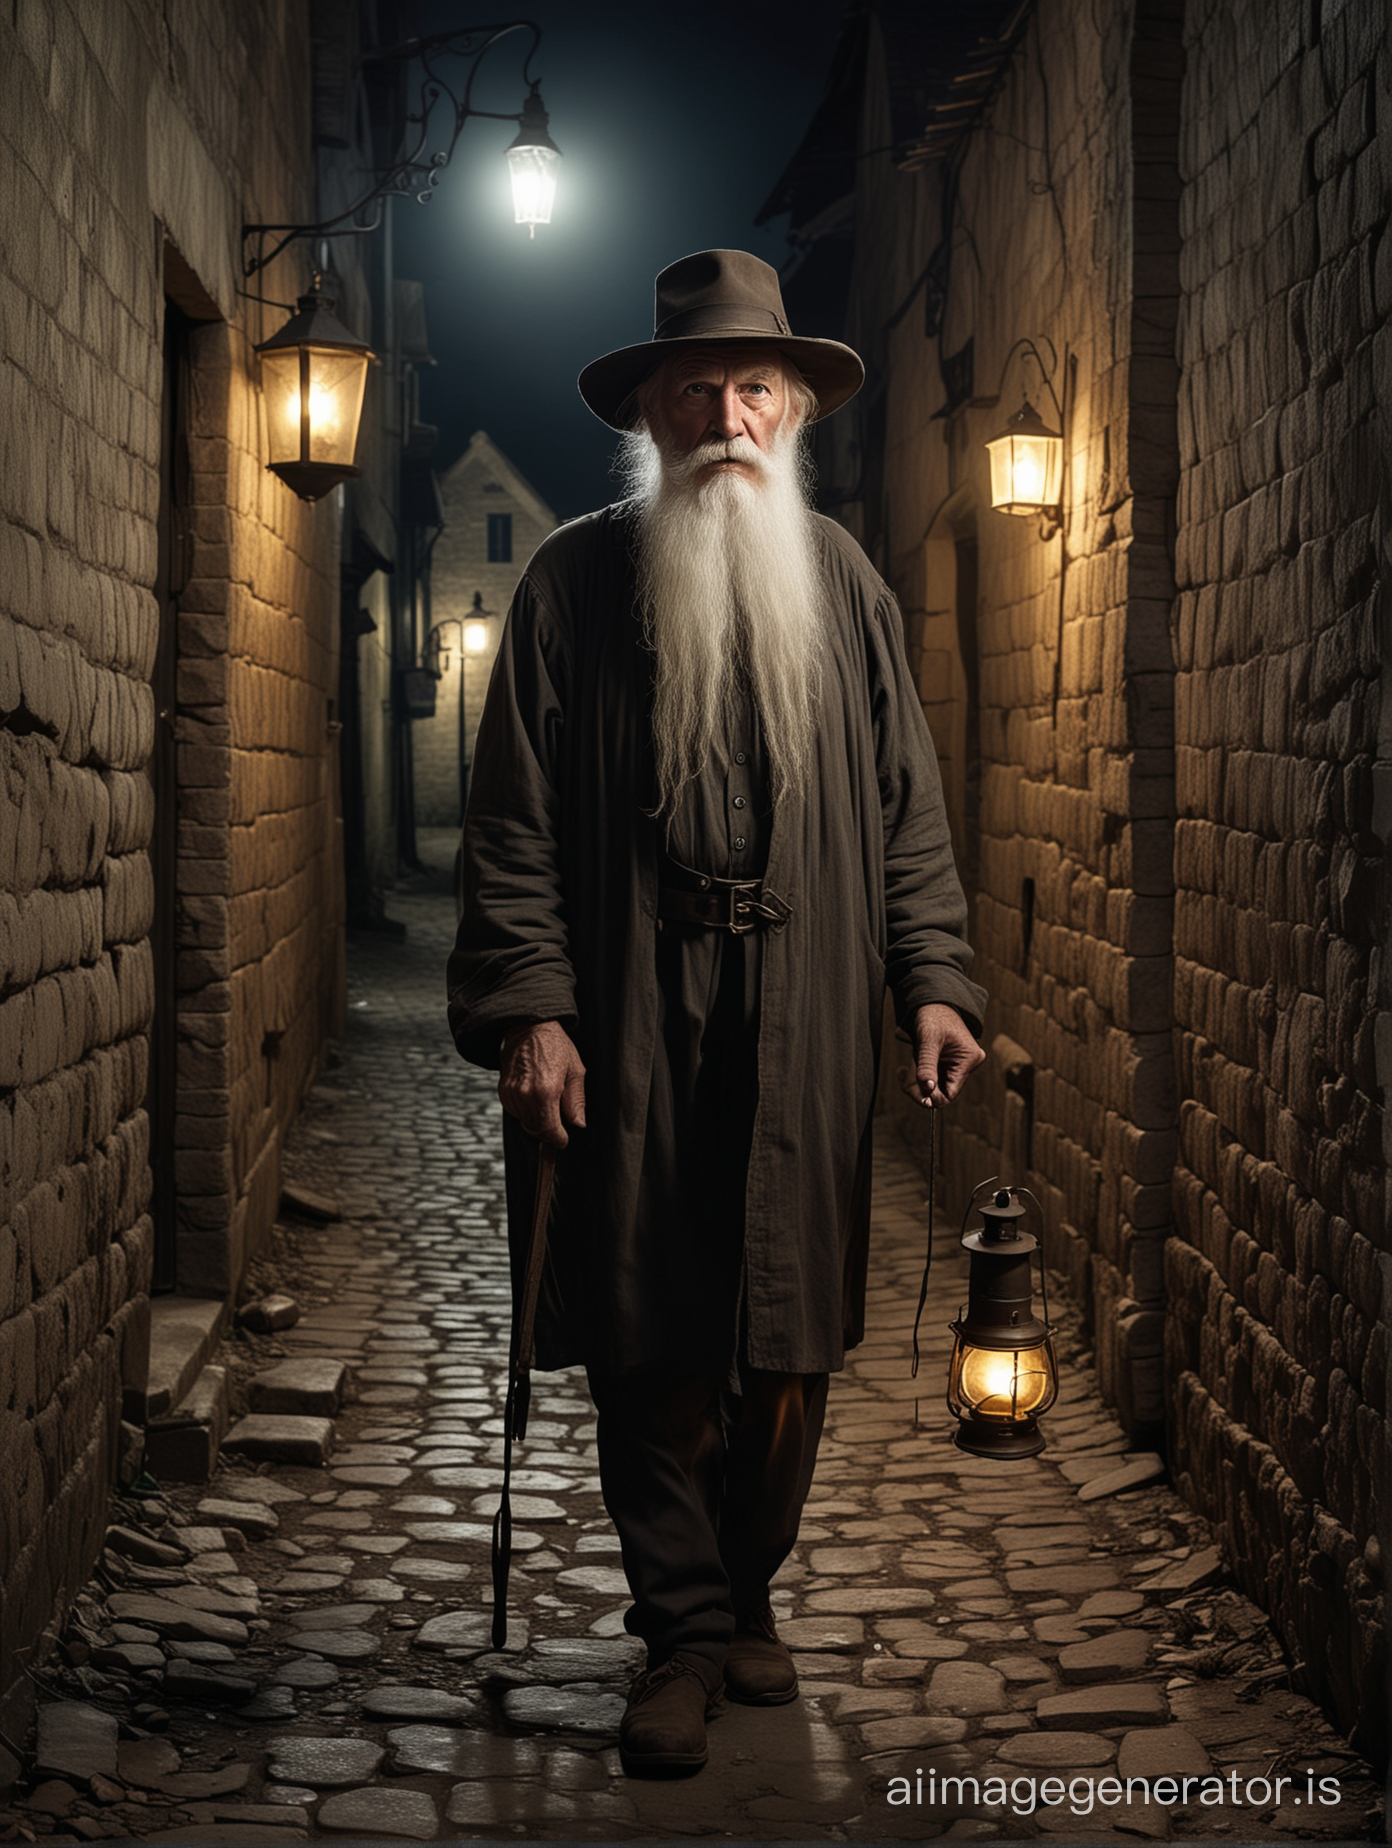 un vieil homme, grand, avec une très longue barbe blanche, portant un chapeau, l'air méchant, tenant une vieille lanternee allumée en 1850, il marche dans une ruelle sombre d'un village médiéval, la photo est en couleurs
